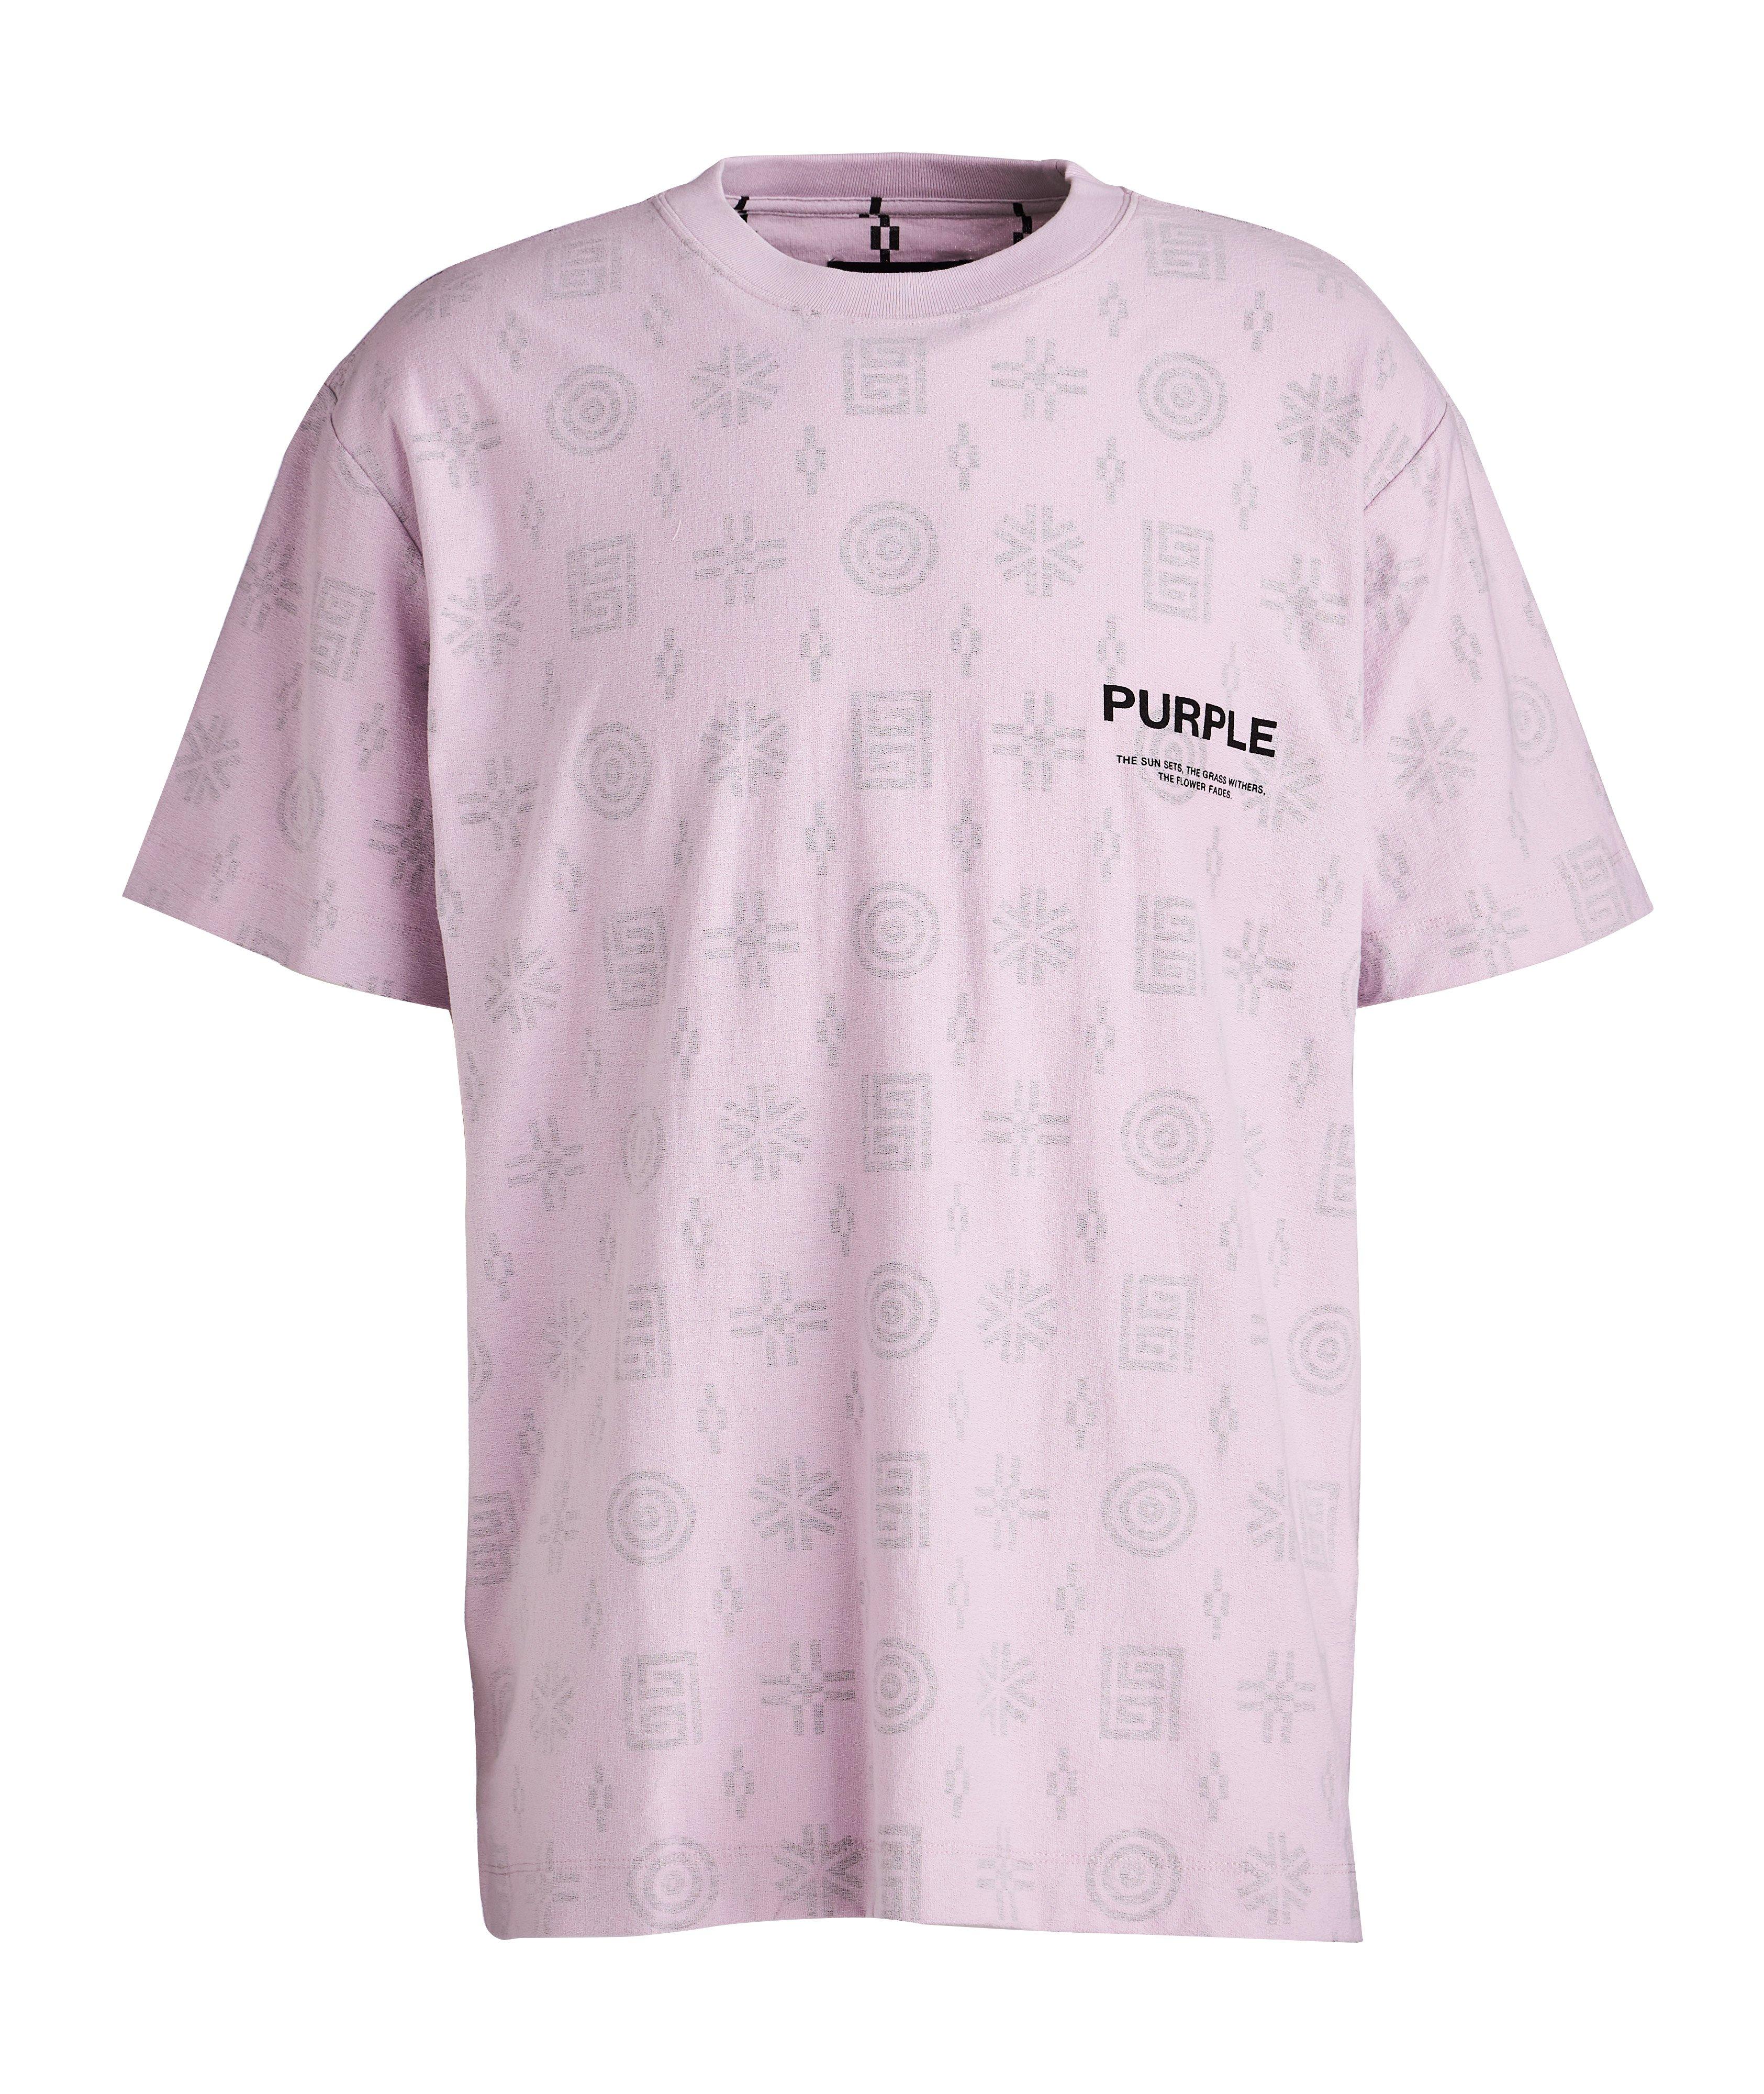 T-shirt P104 en tissu bouclé à motif image 0